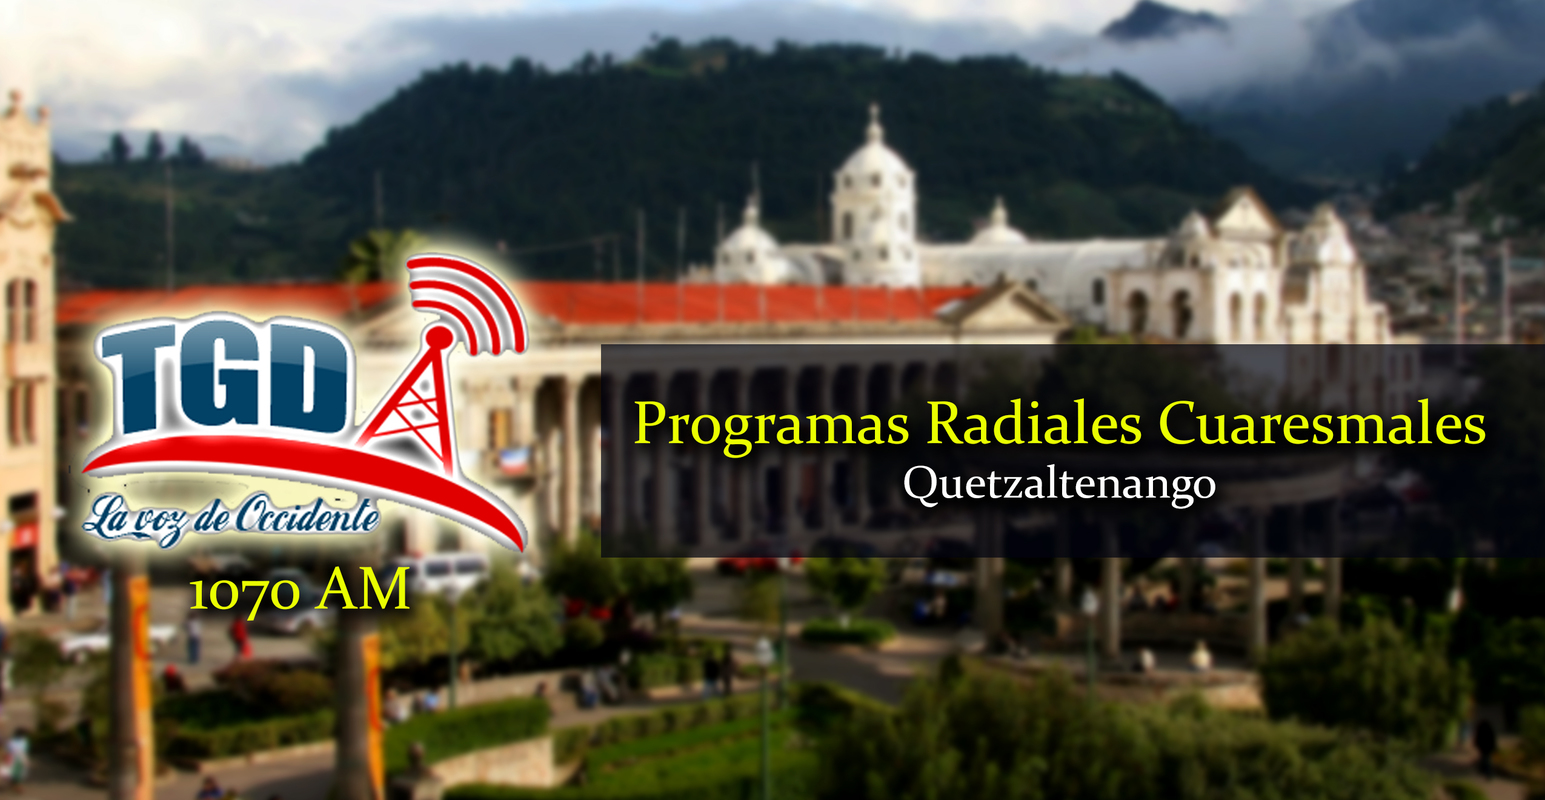 Programación Radial Cuaresmal Quetzaltenango - RADIO TGD